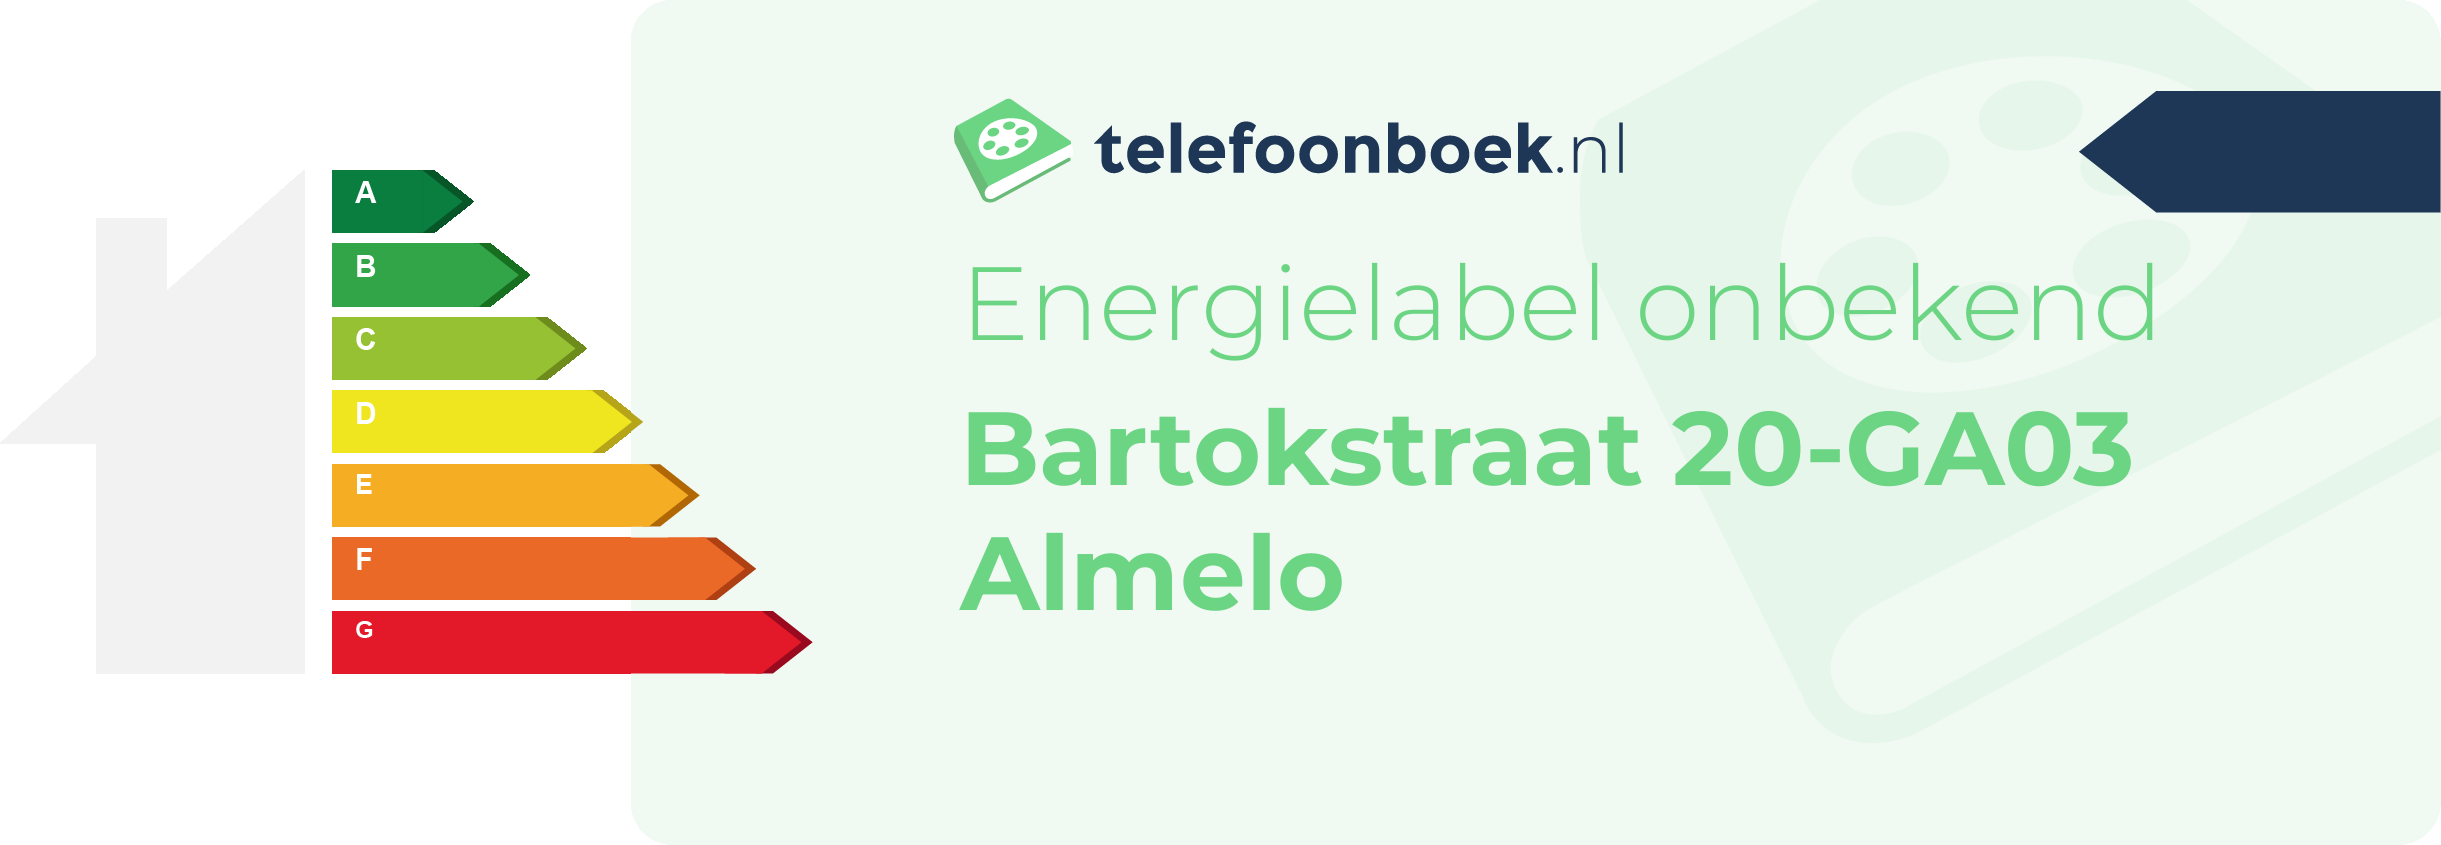 Energielabel Bartokstraat 20-GA03 Almelo